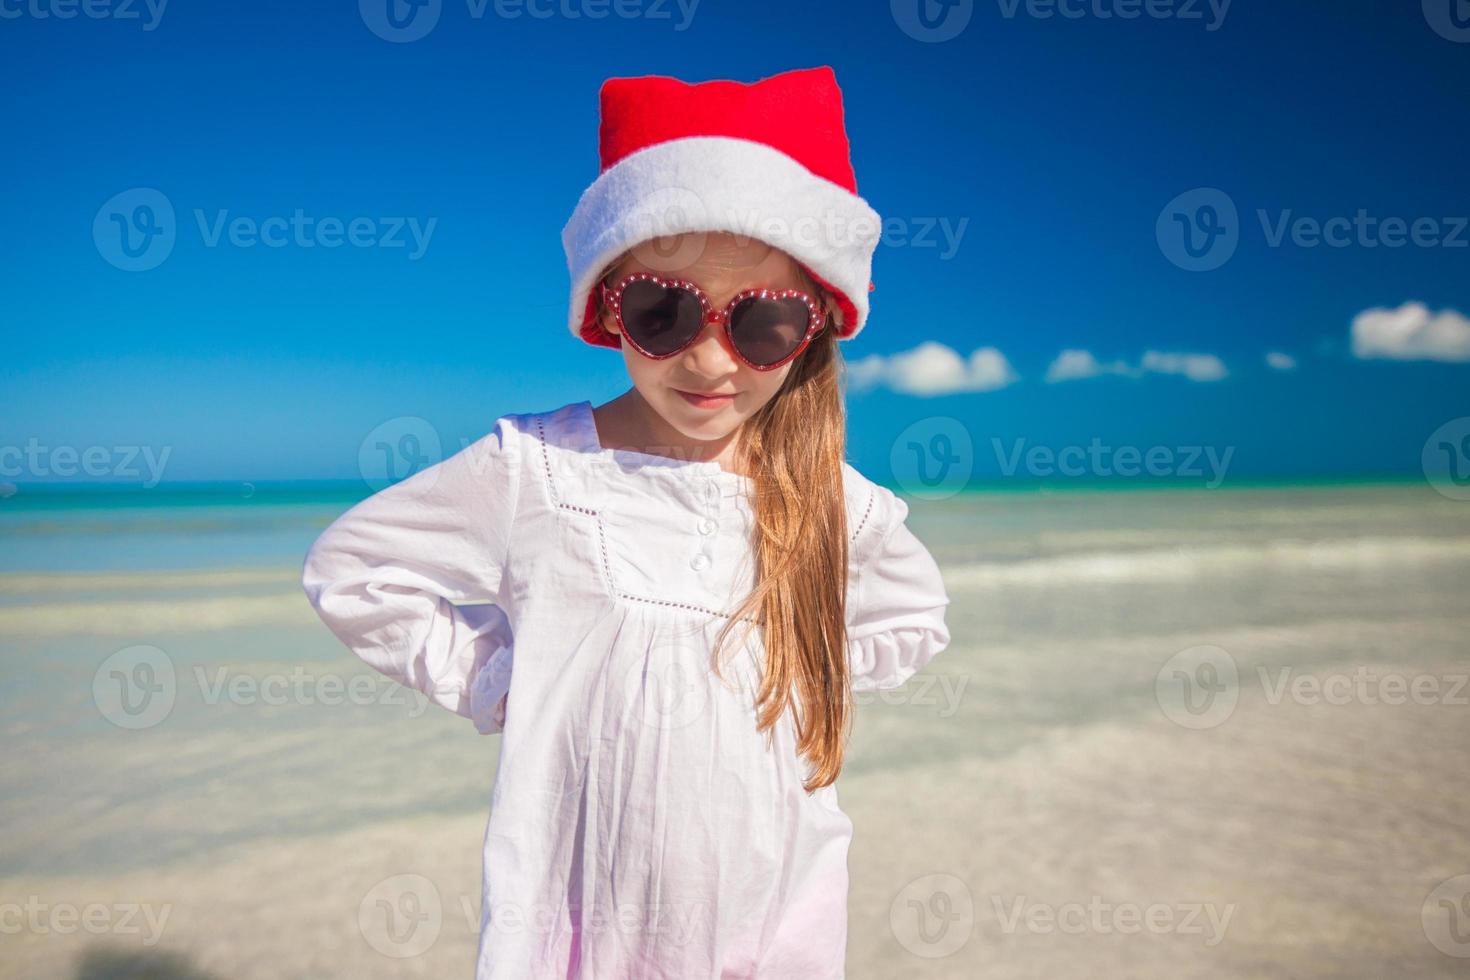 niña en sombrero rojo santa claus y gafas de sol en la playa exótica foto